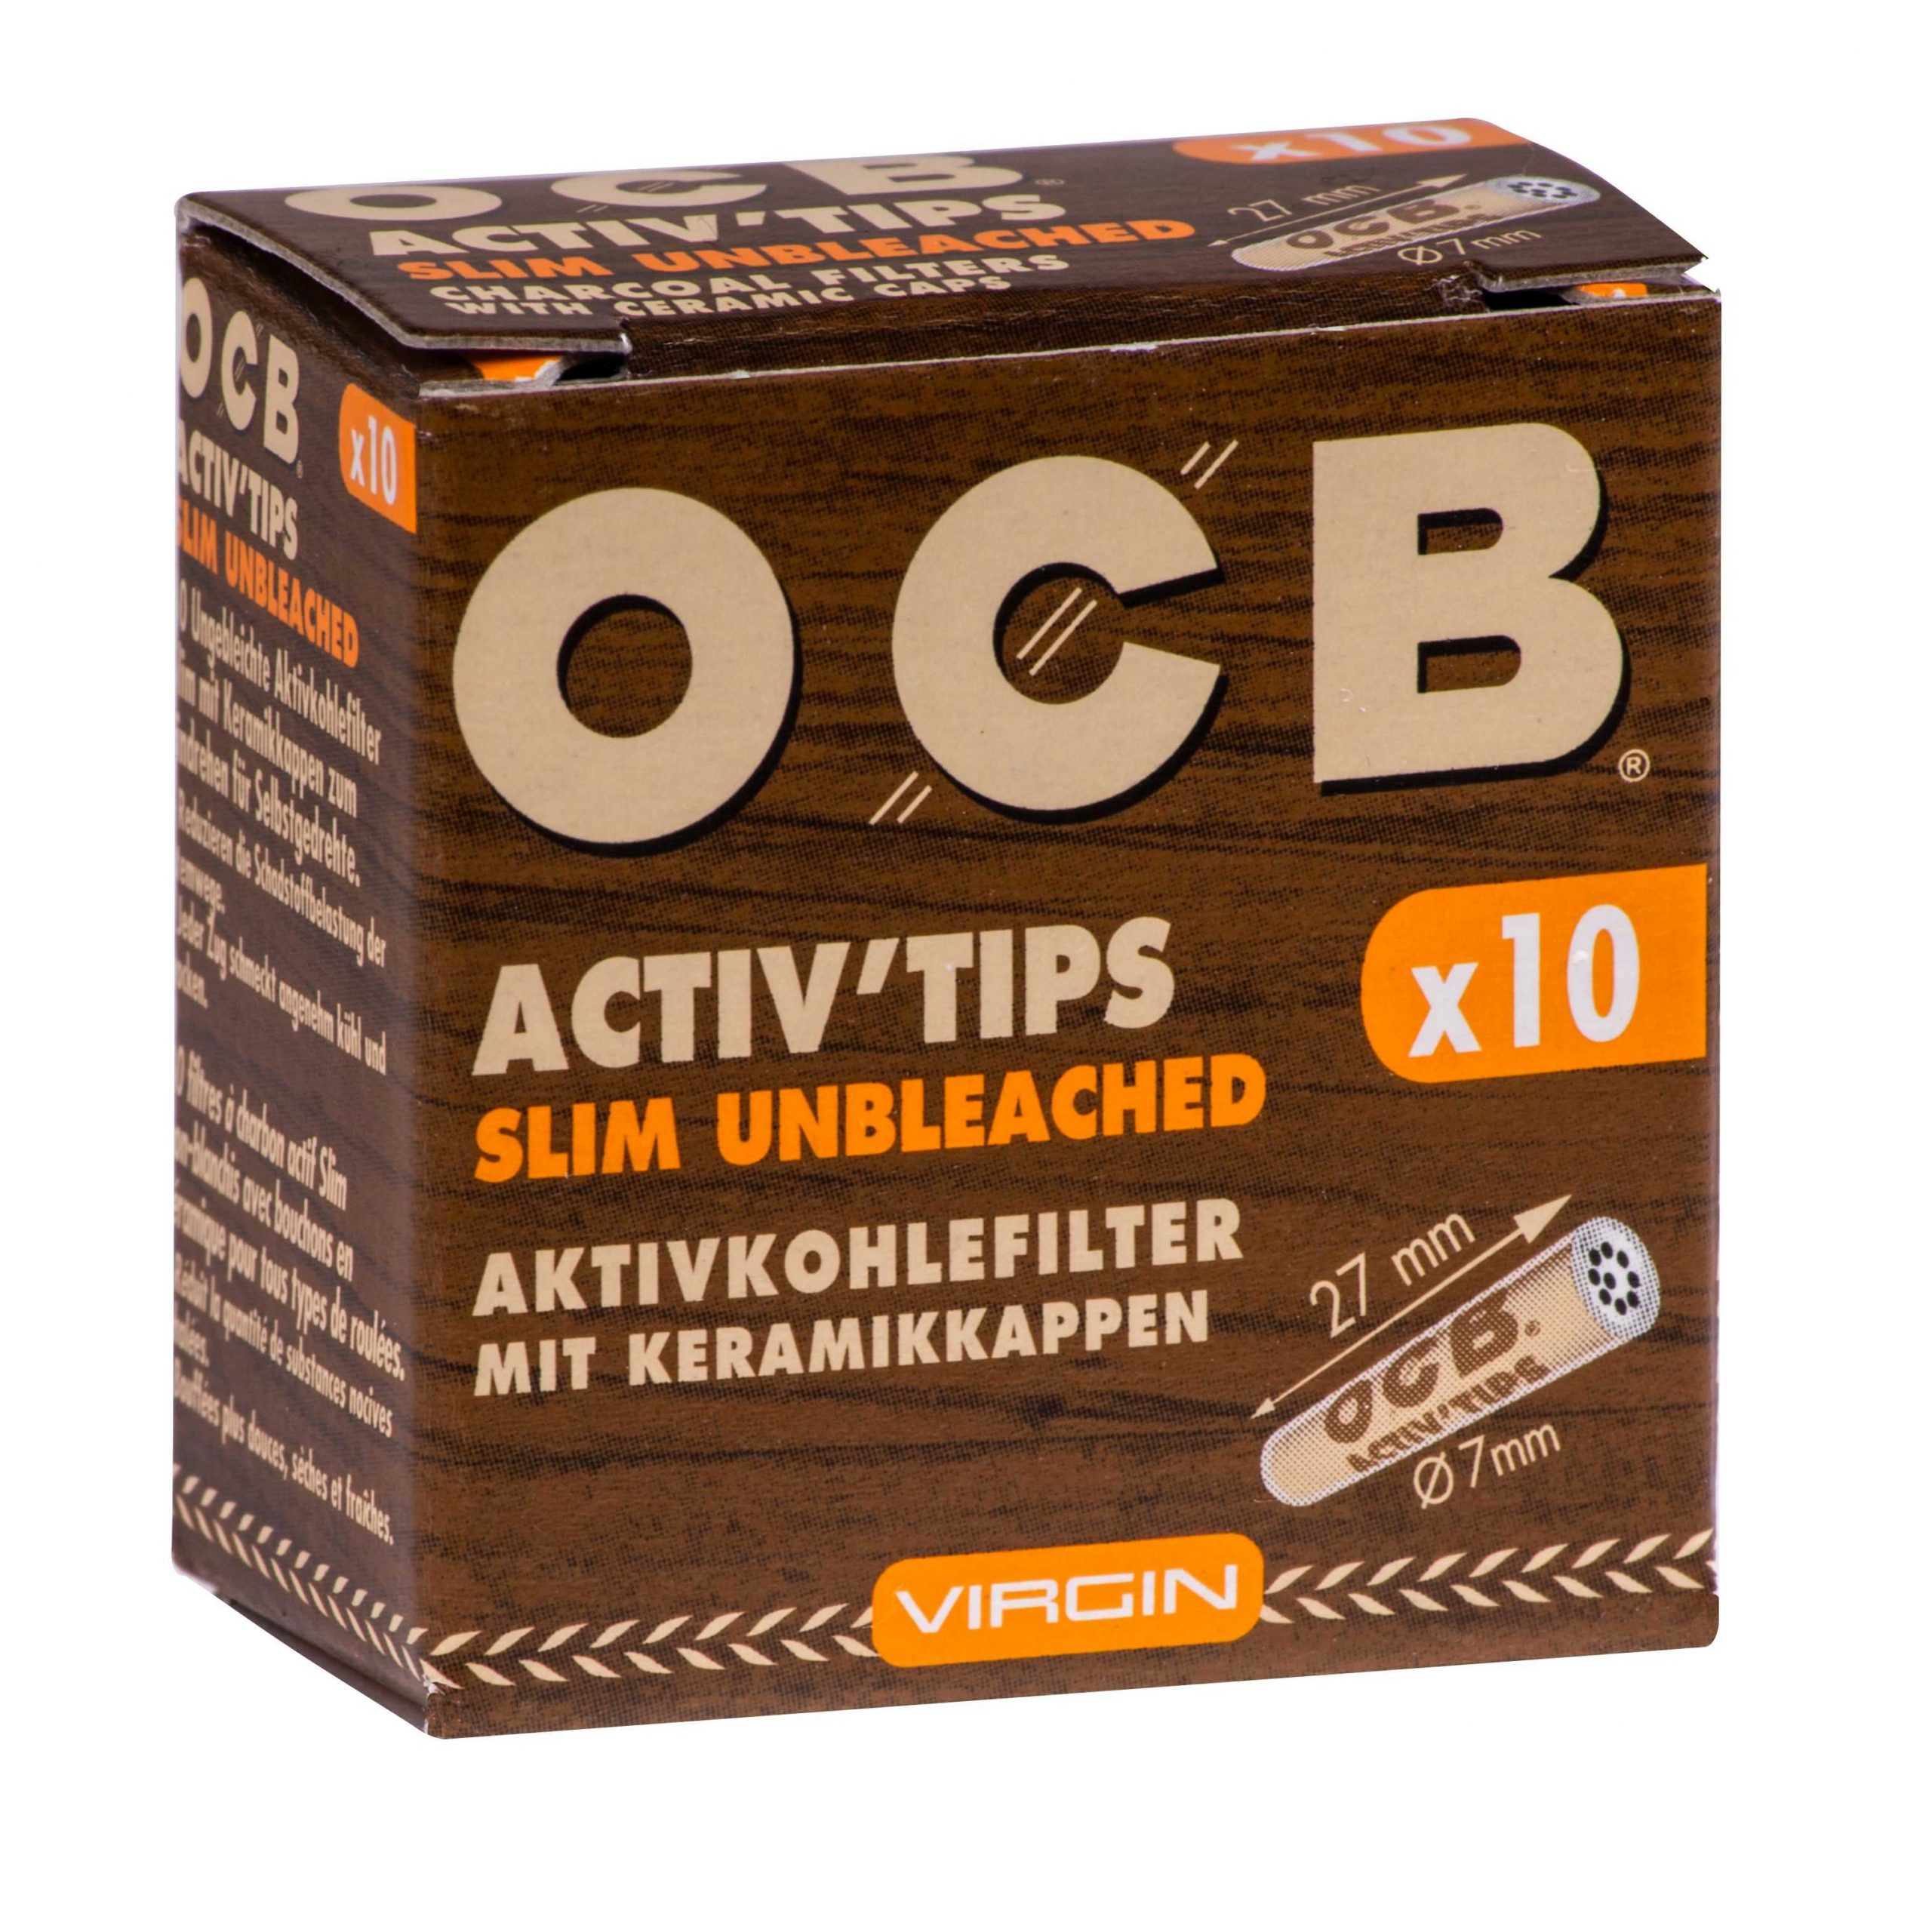 OCB Activ Tips Slim Unbleached – 20 Kartons mit je 10 Filter – 7mm